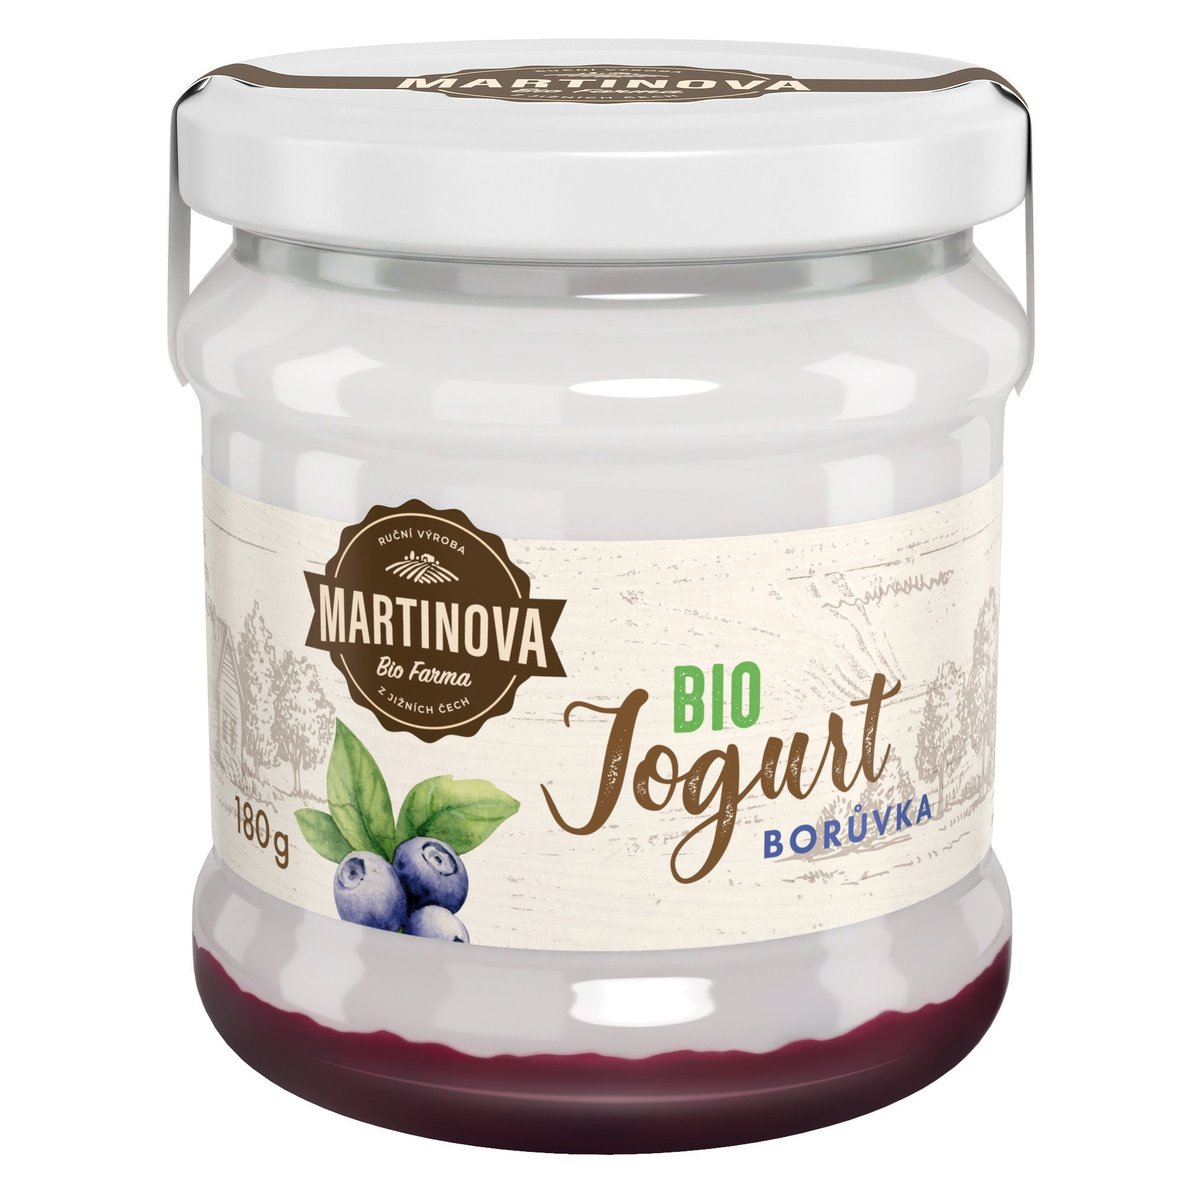 Martinova Bio Farma BIO Jogurt borůvka